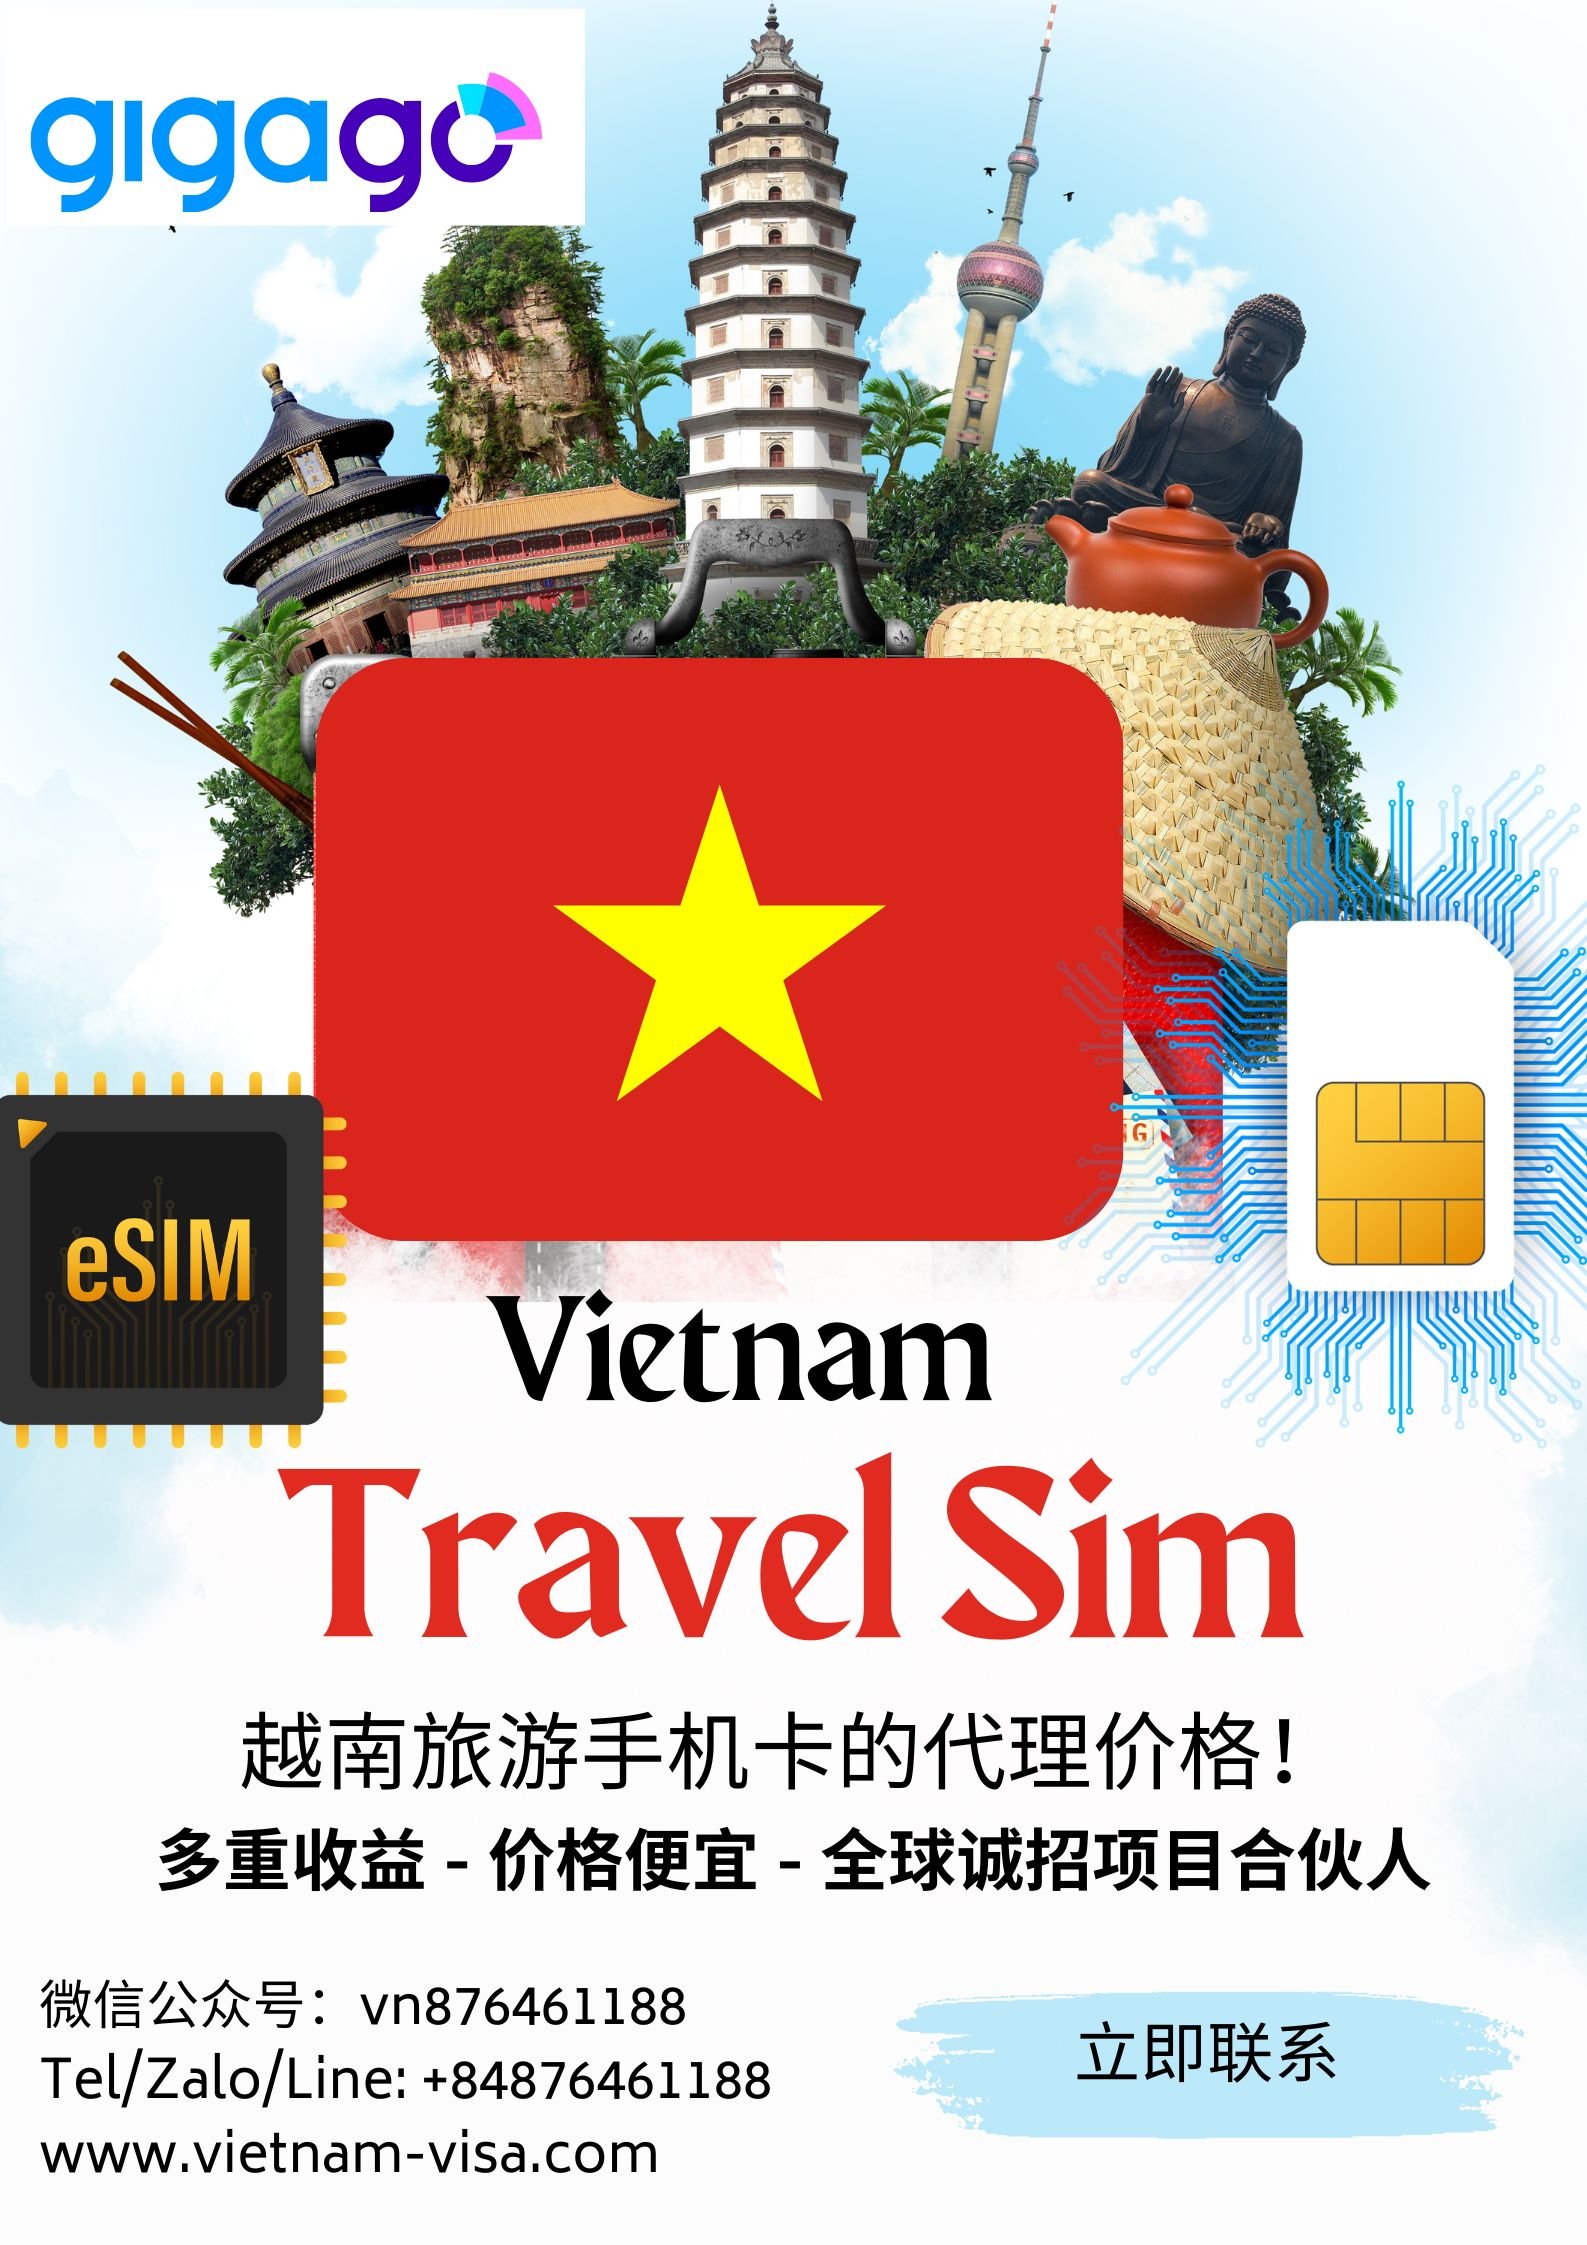 越南旅游手机卡的代理价格 – Vietnam Travel Sim